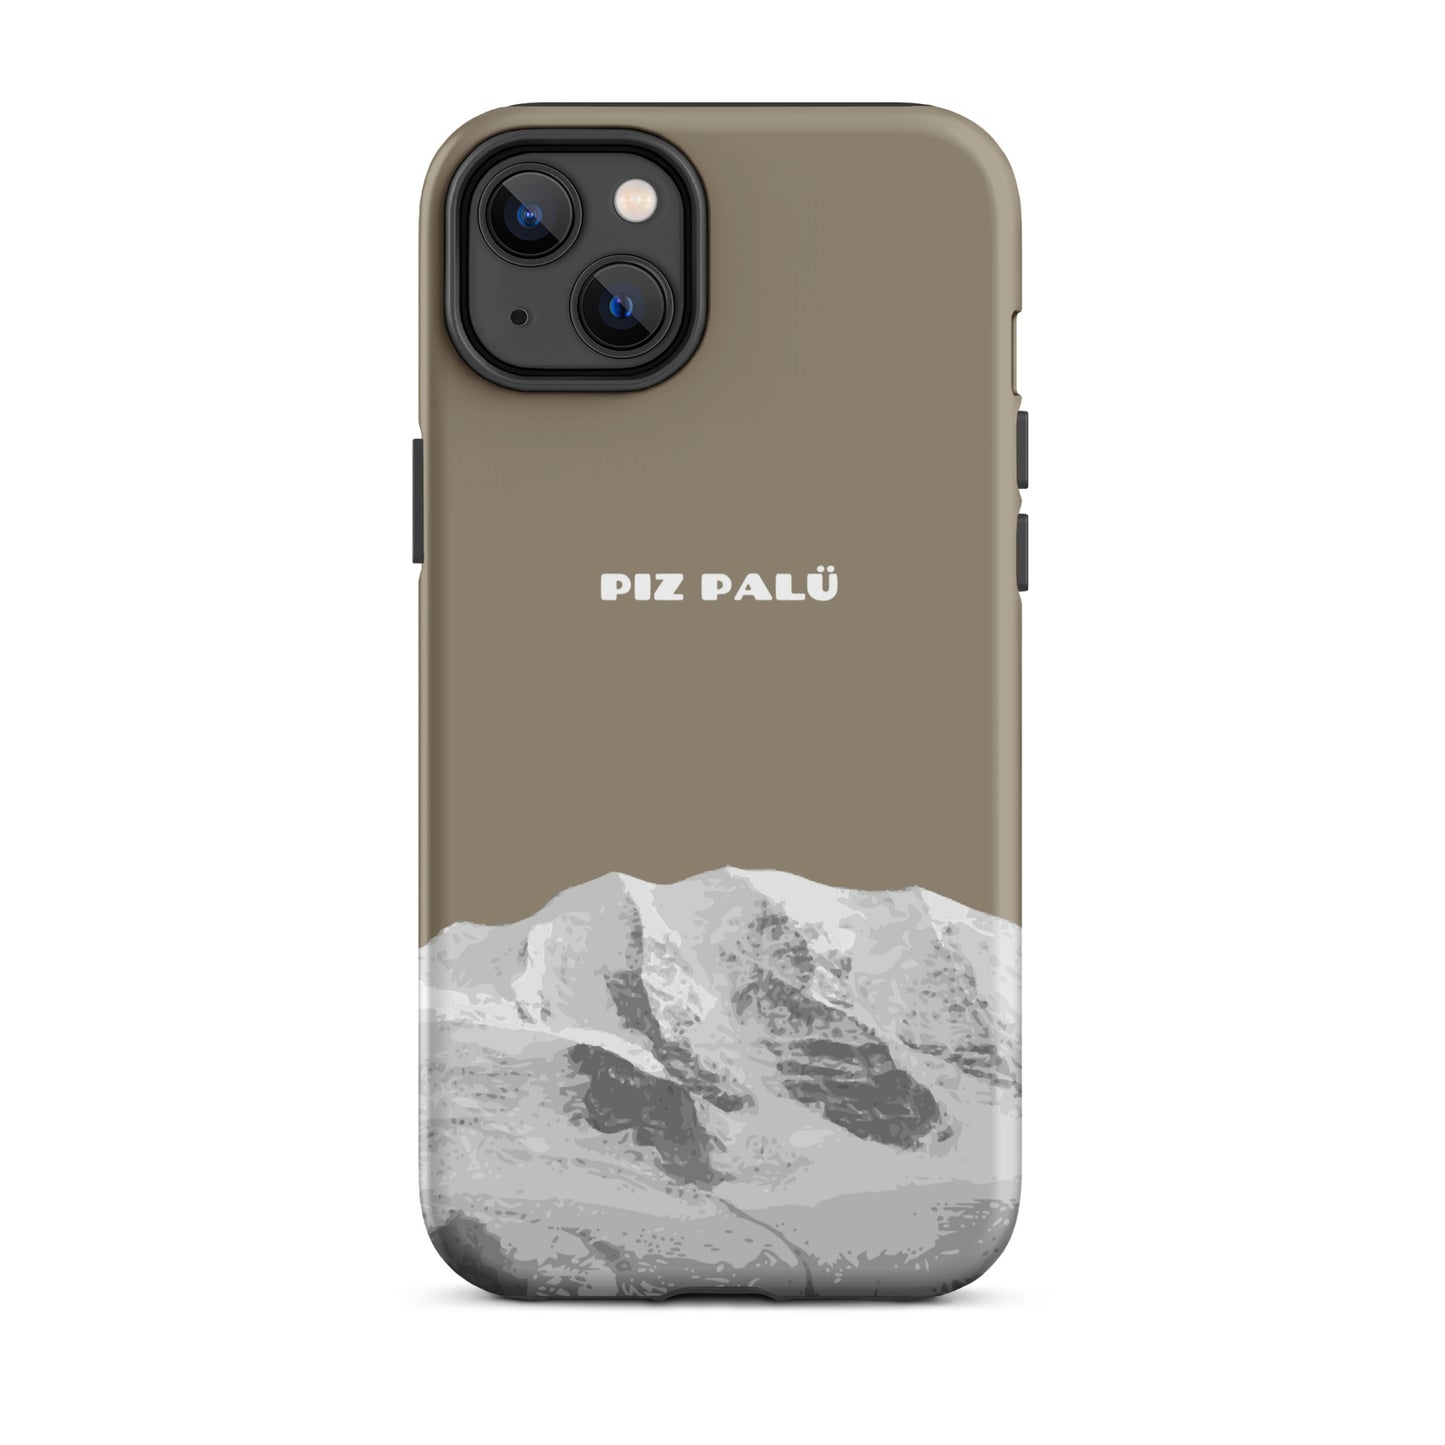 Hülle für das iPhone 14 Plus von Apple in der Farbe Graubrau, dass den Piz Palü in Graubünden zeigt.